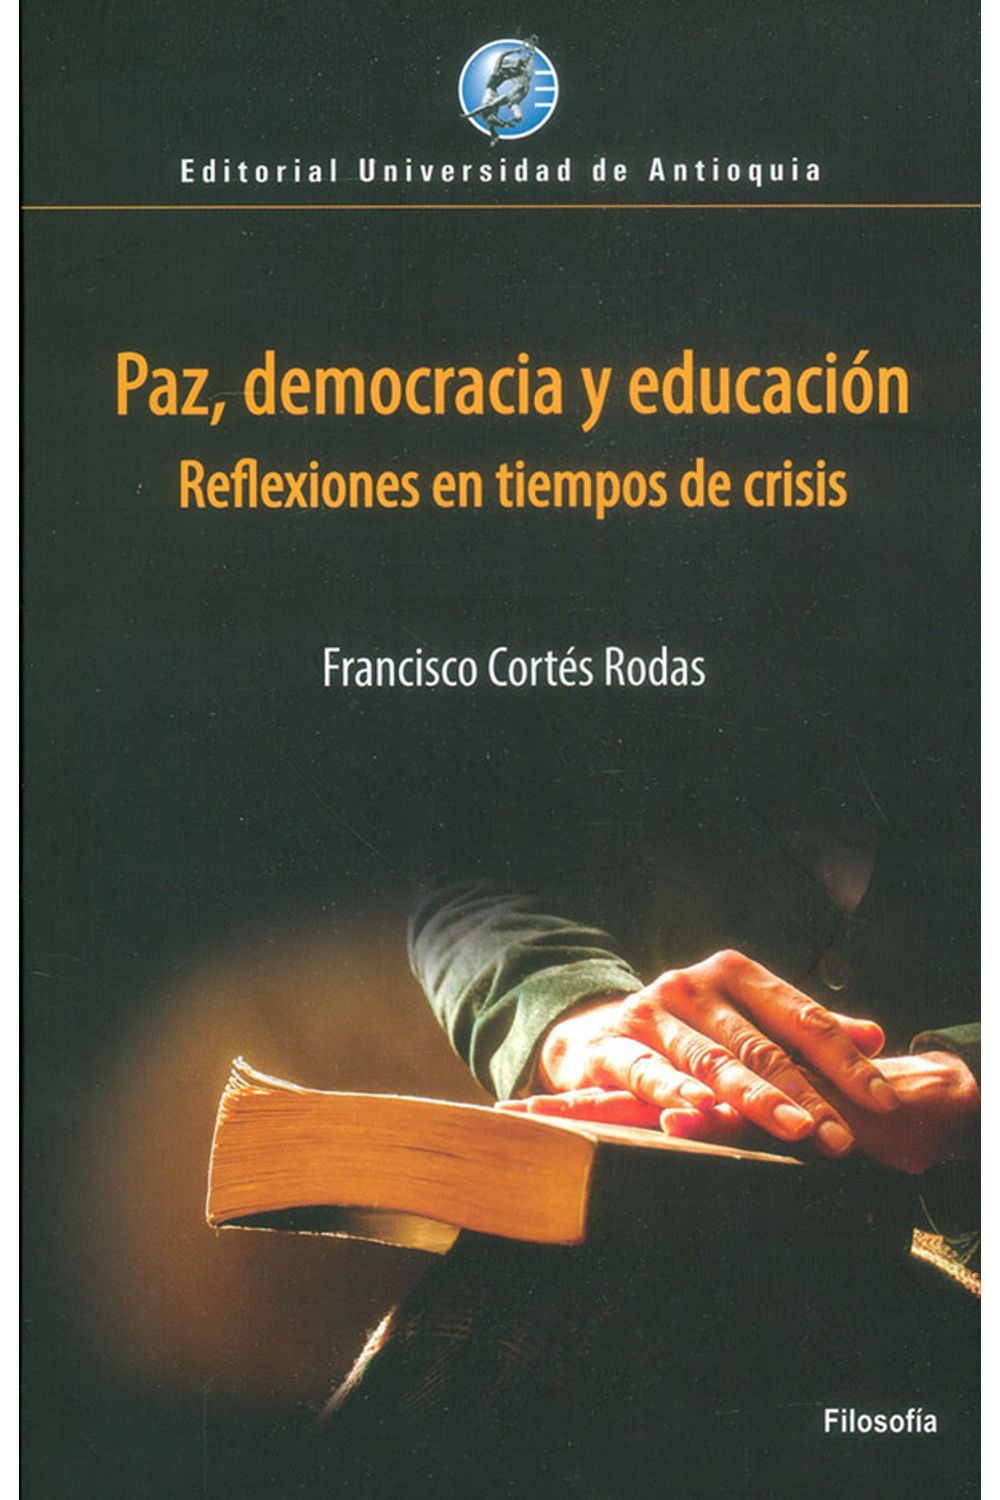 paz-democracia-y-educacion-9789587147667-udea